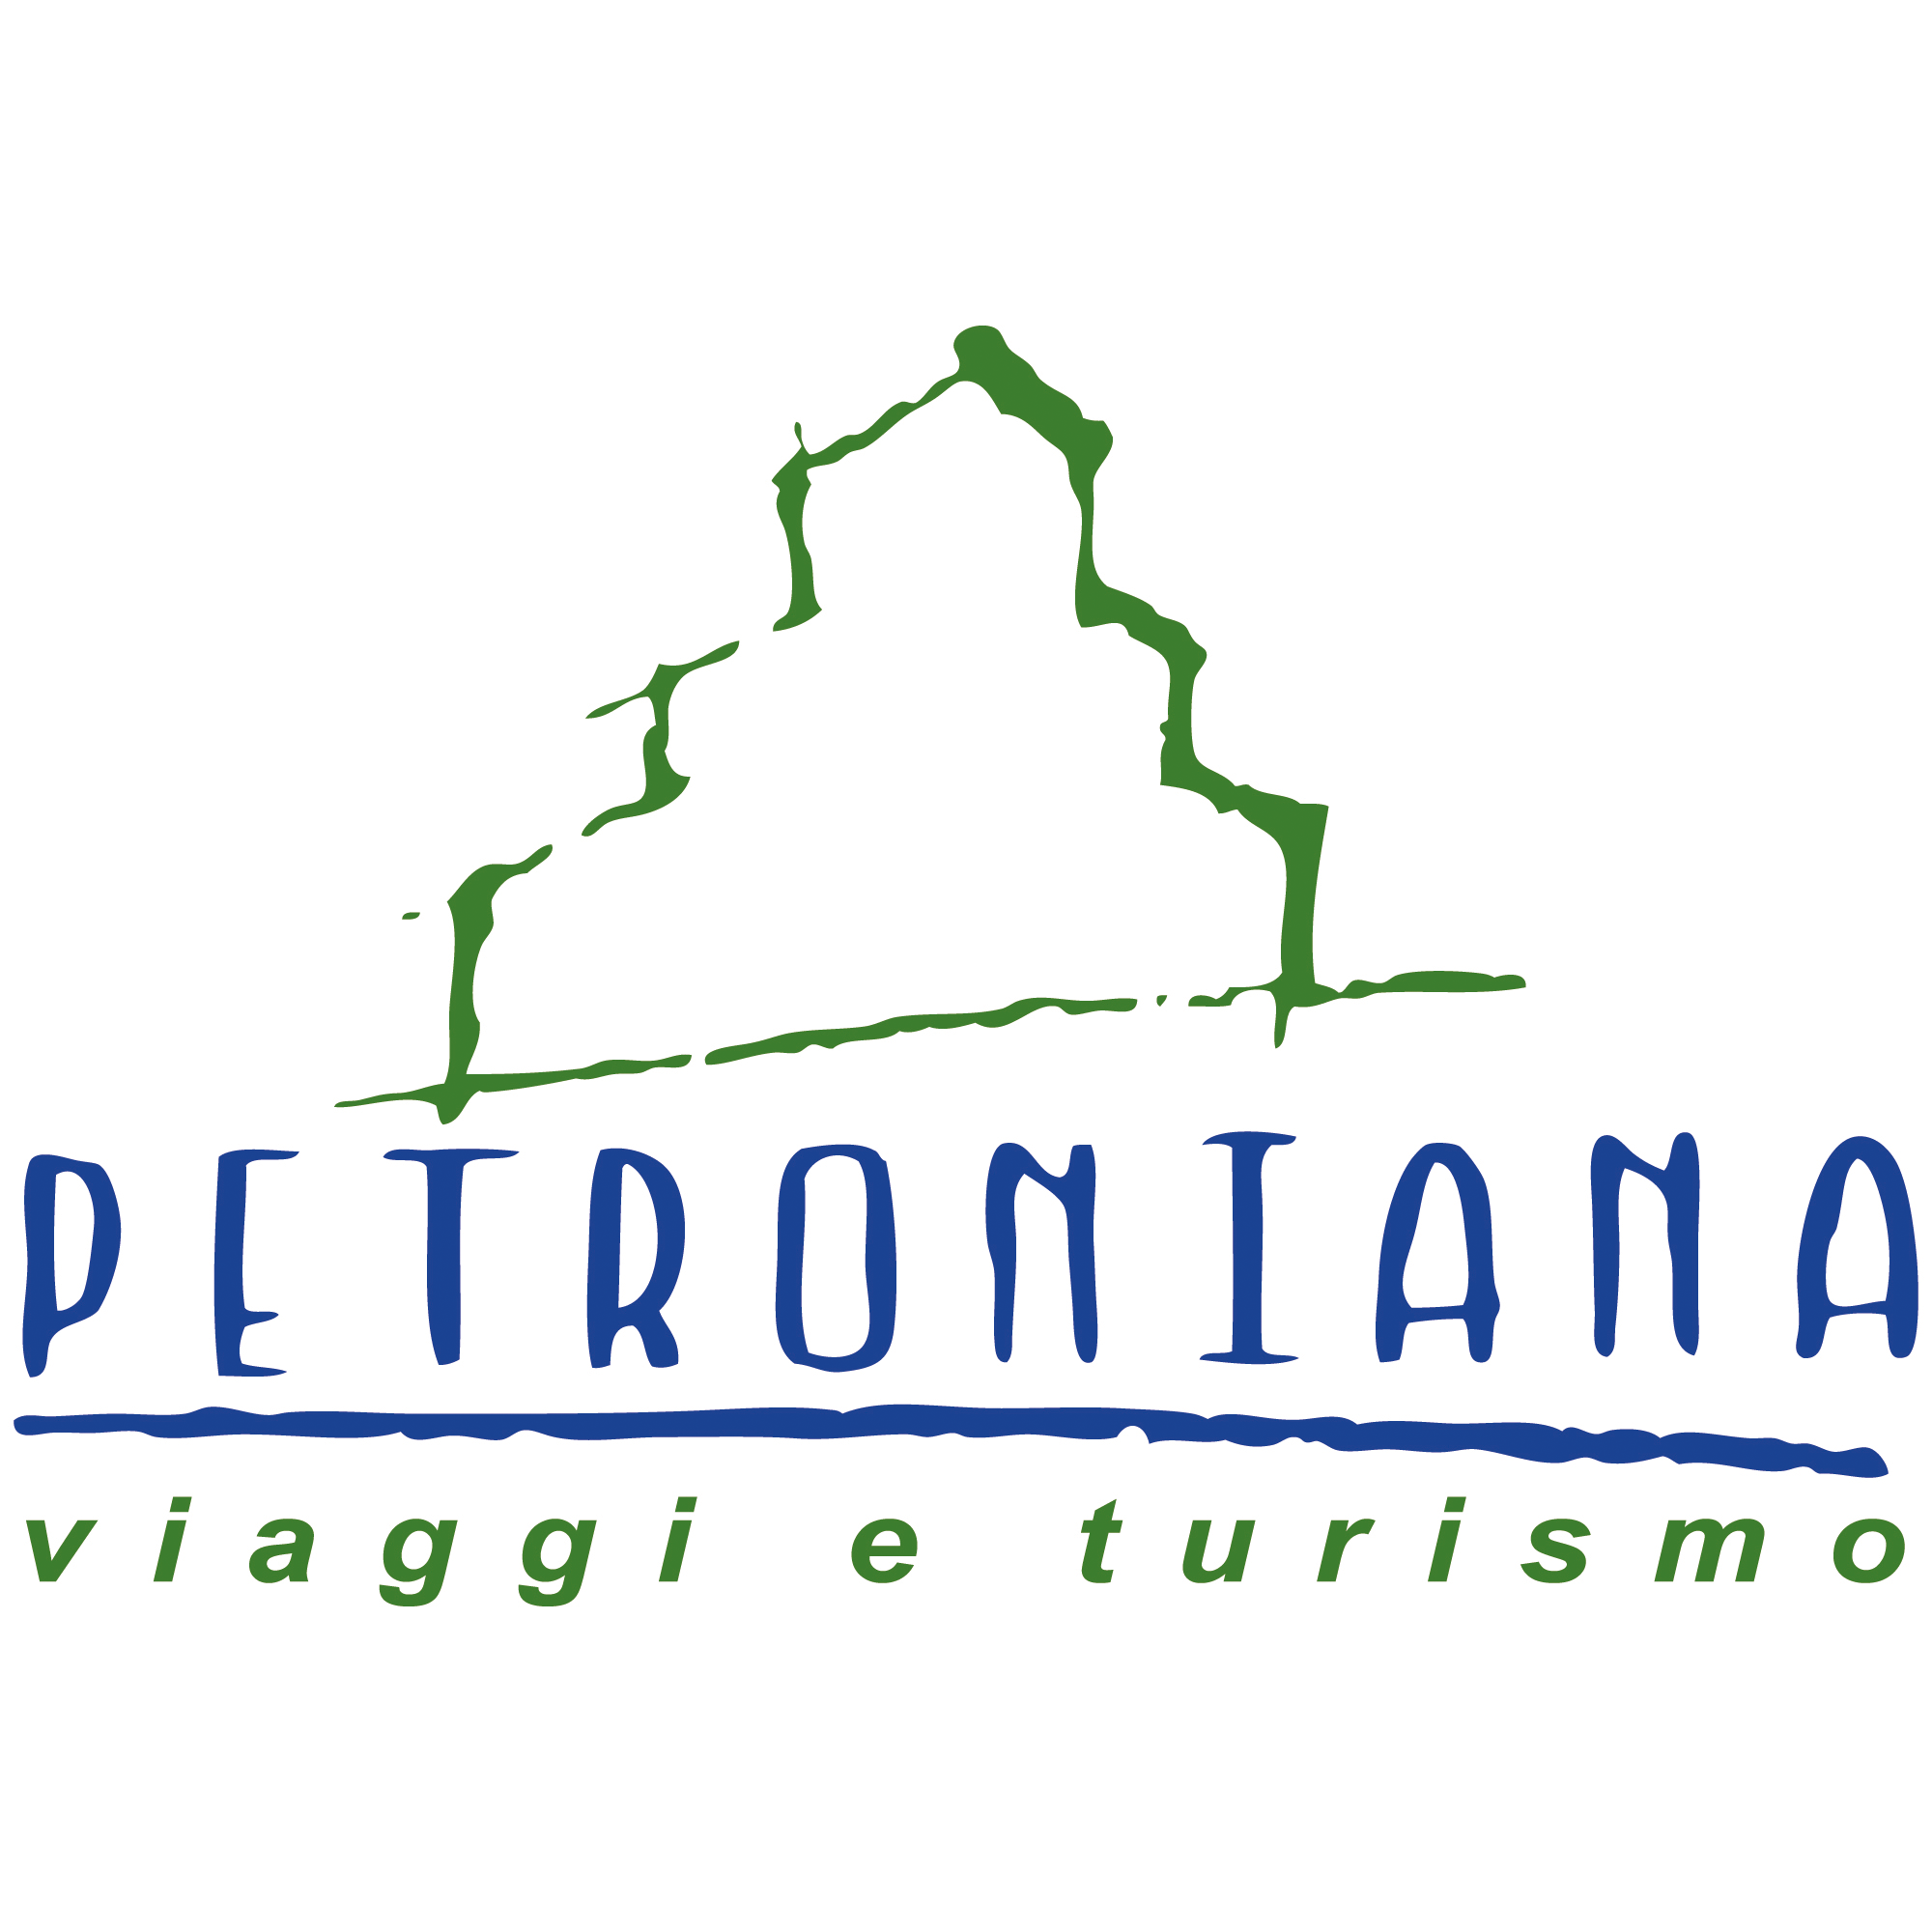 Petroniana Viaggi e Turismo